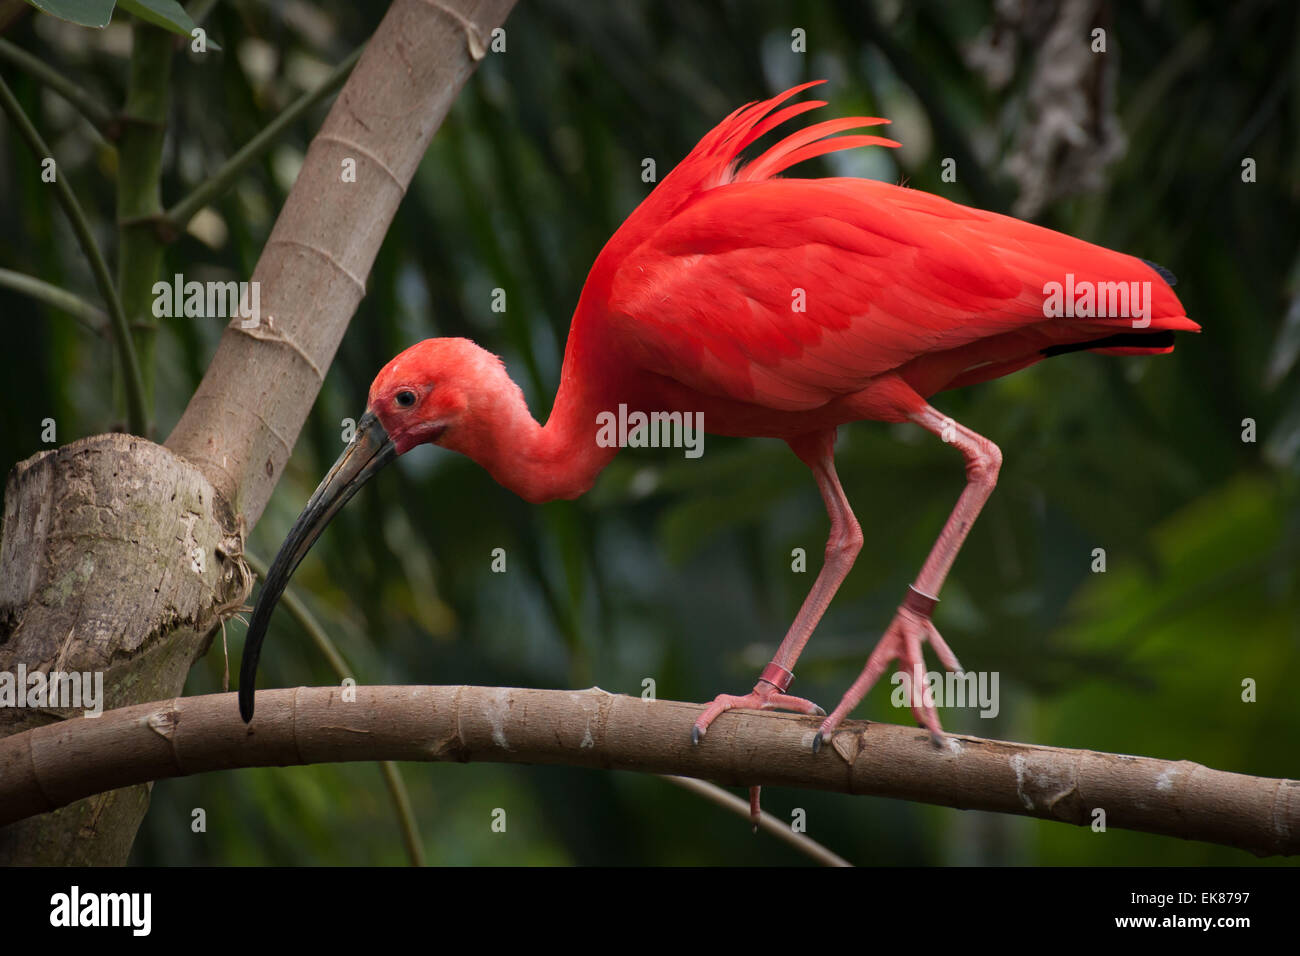 A scarlet ibis walking along a branch. Stock Photo